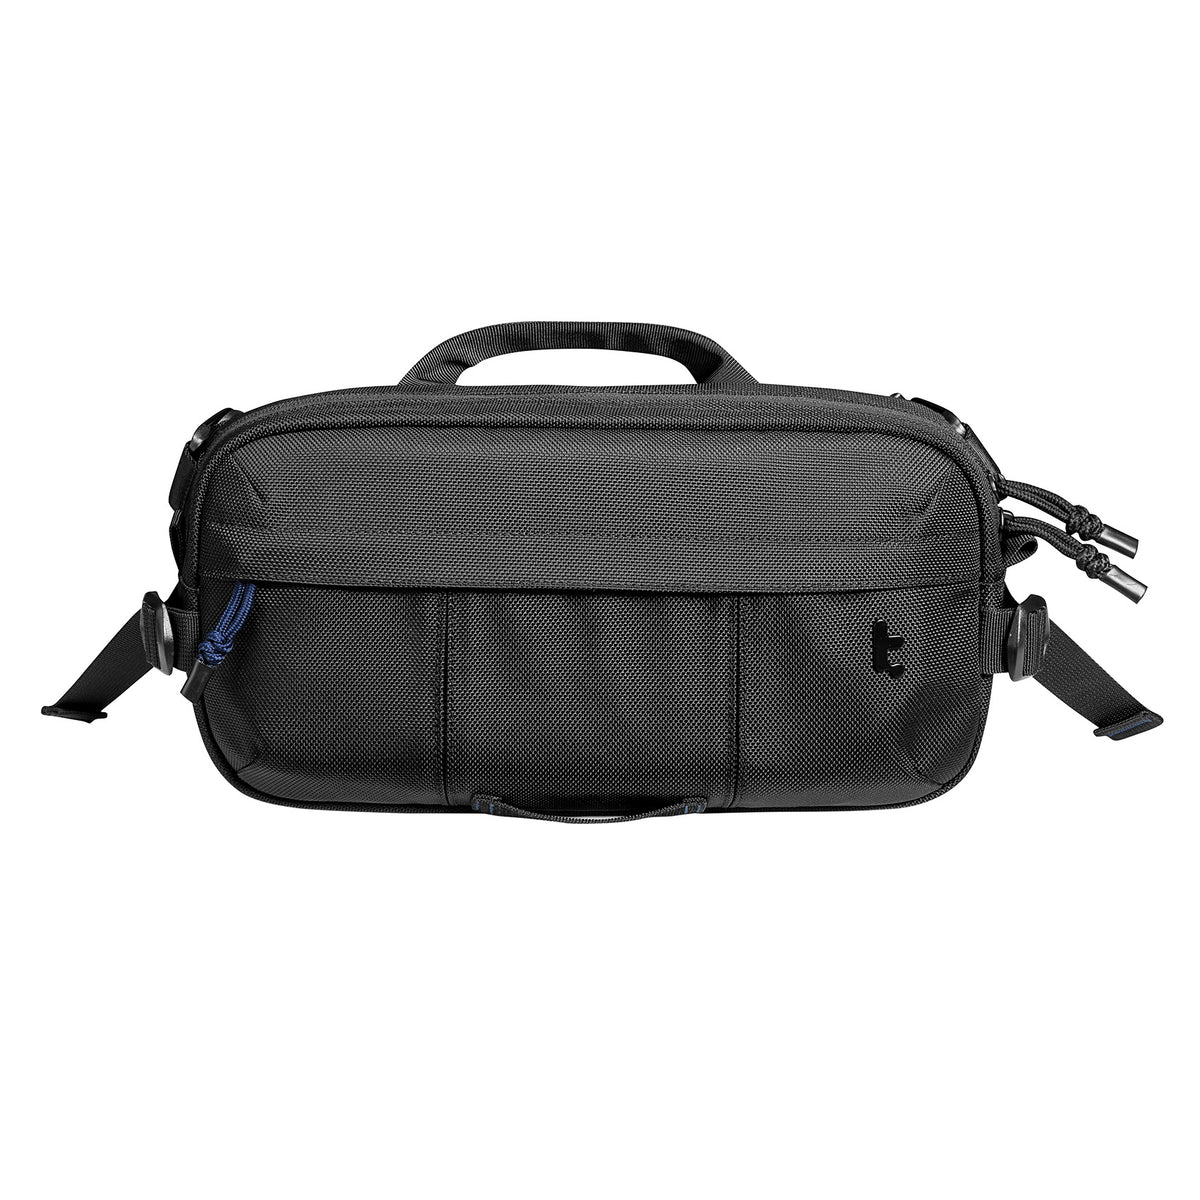 Tomtoc Wander Daily Sling Bag / Shoulder Bag / Men Bag